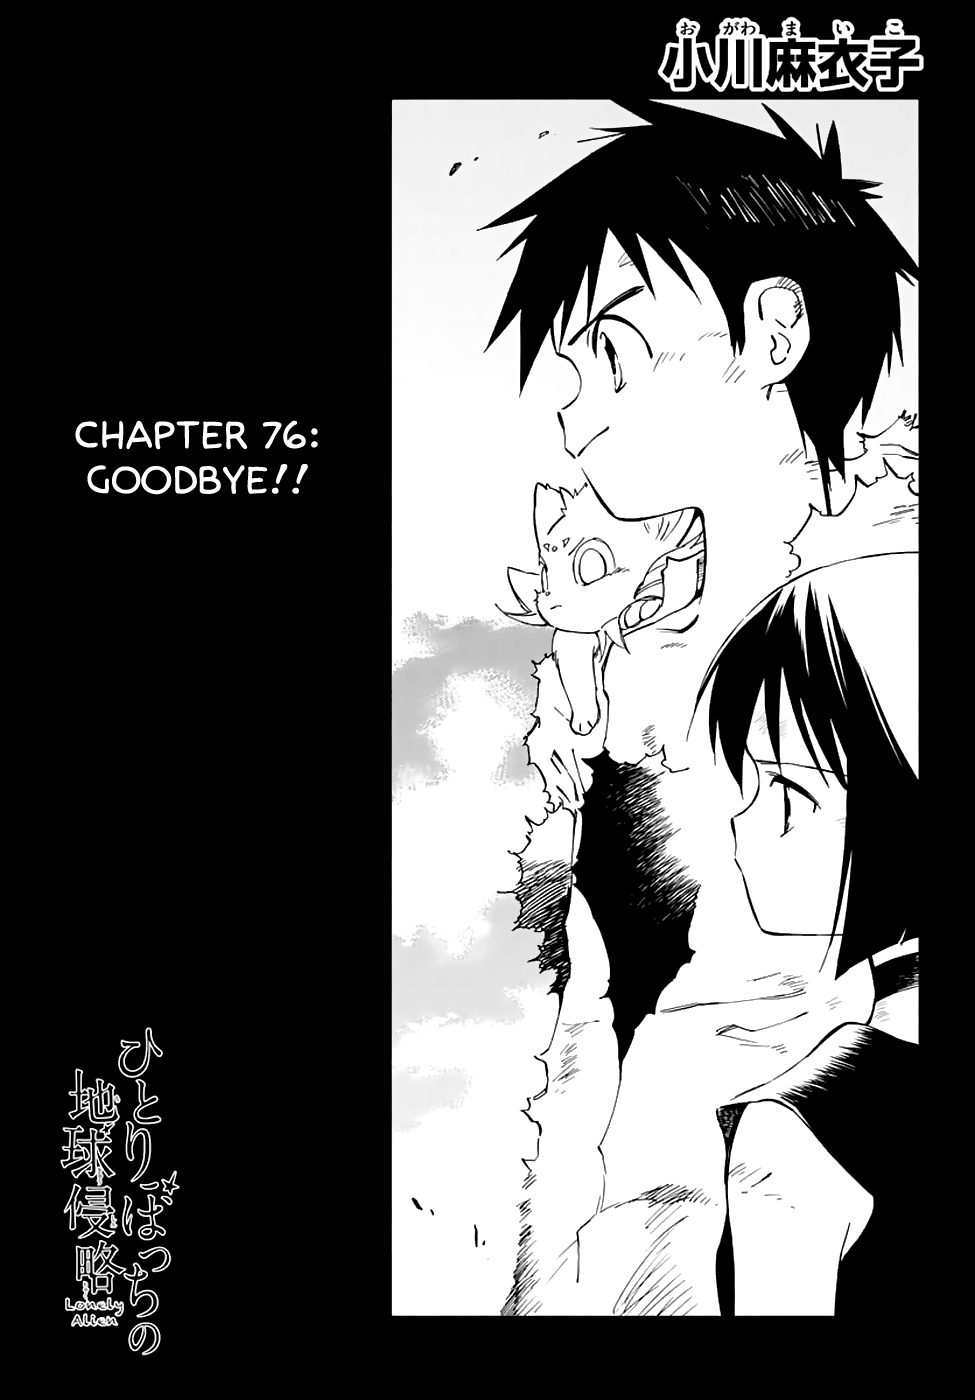 Hitoribocchi no Chikyuu Shinryaku Vol. 15 Ch. 76 Goodbye!!